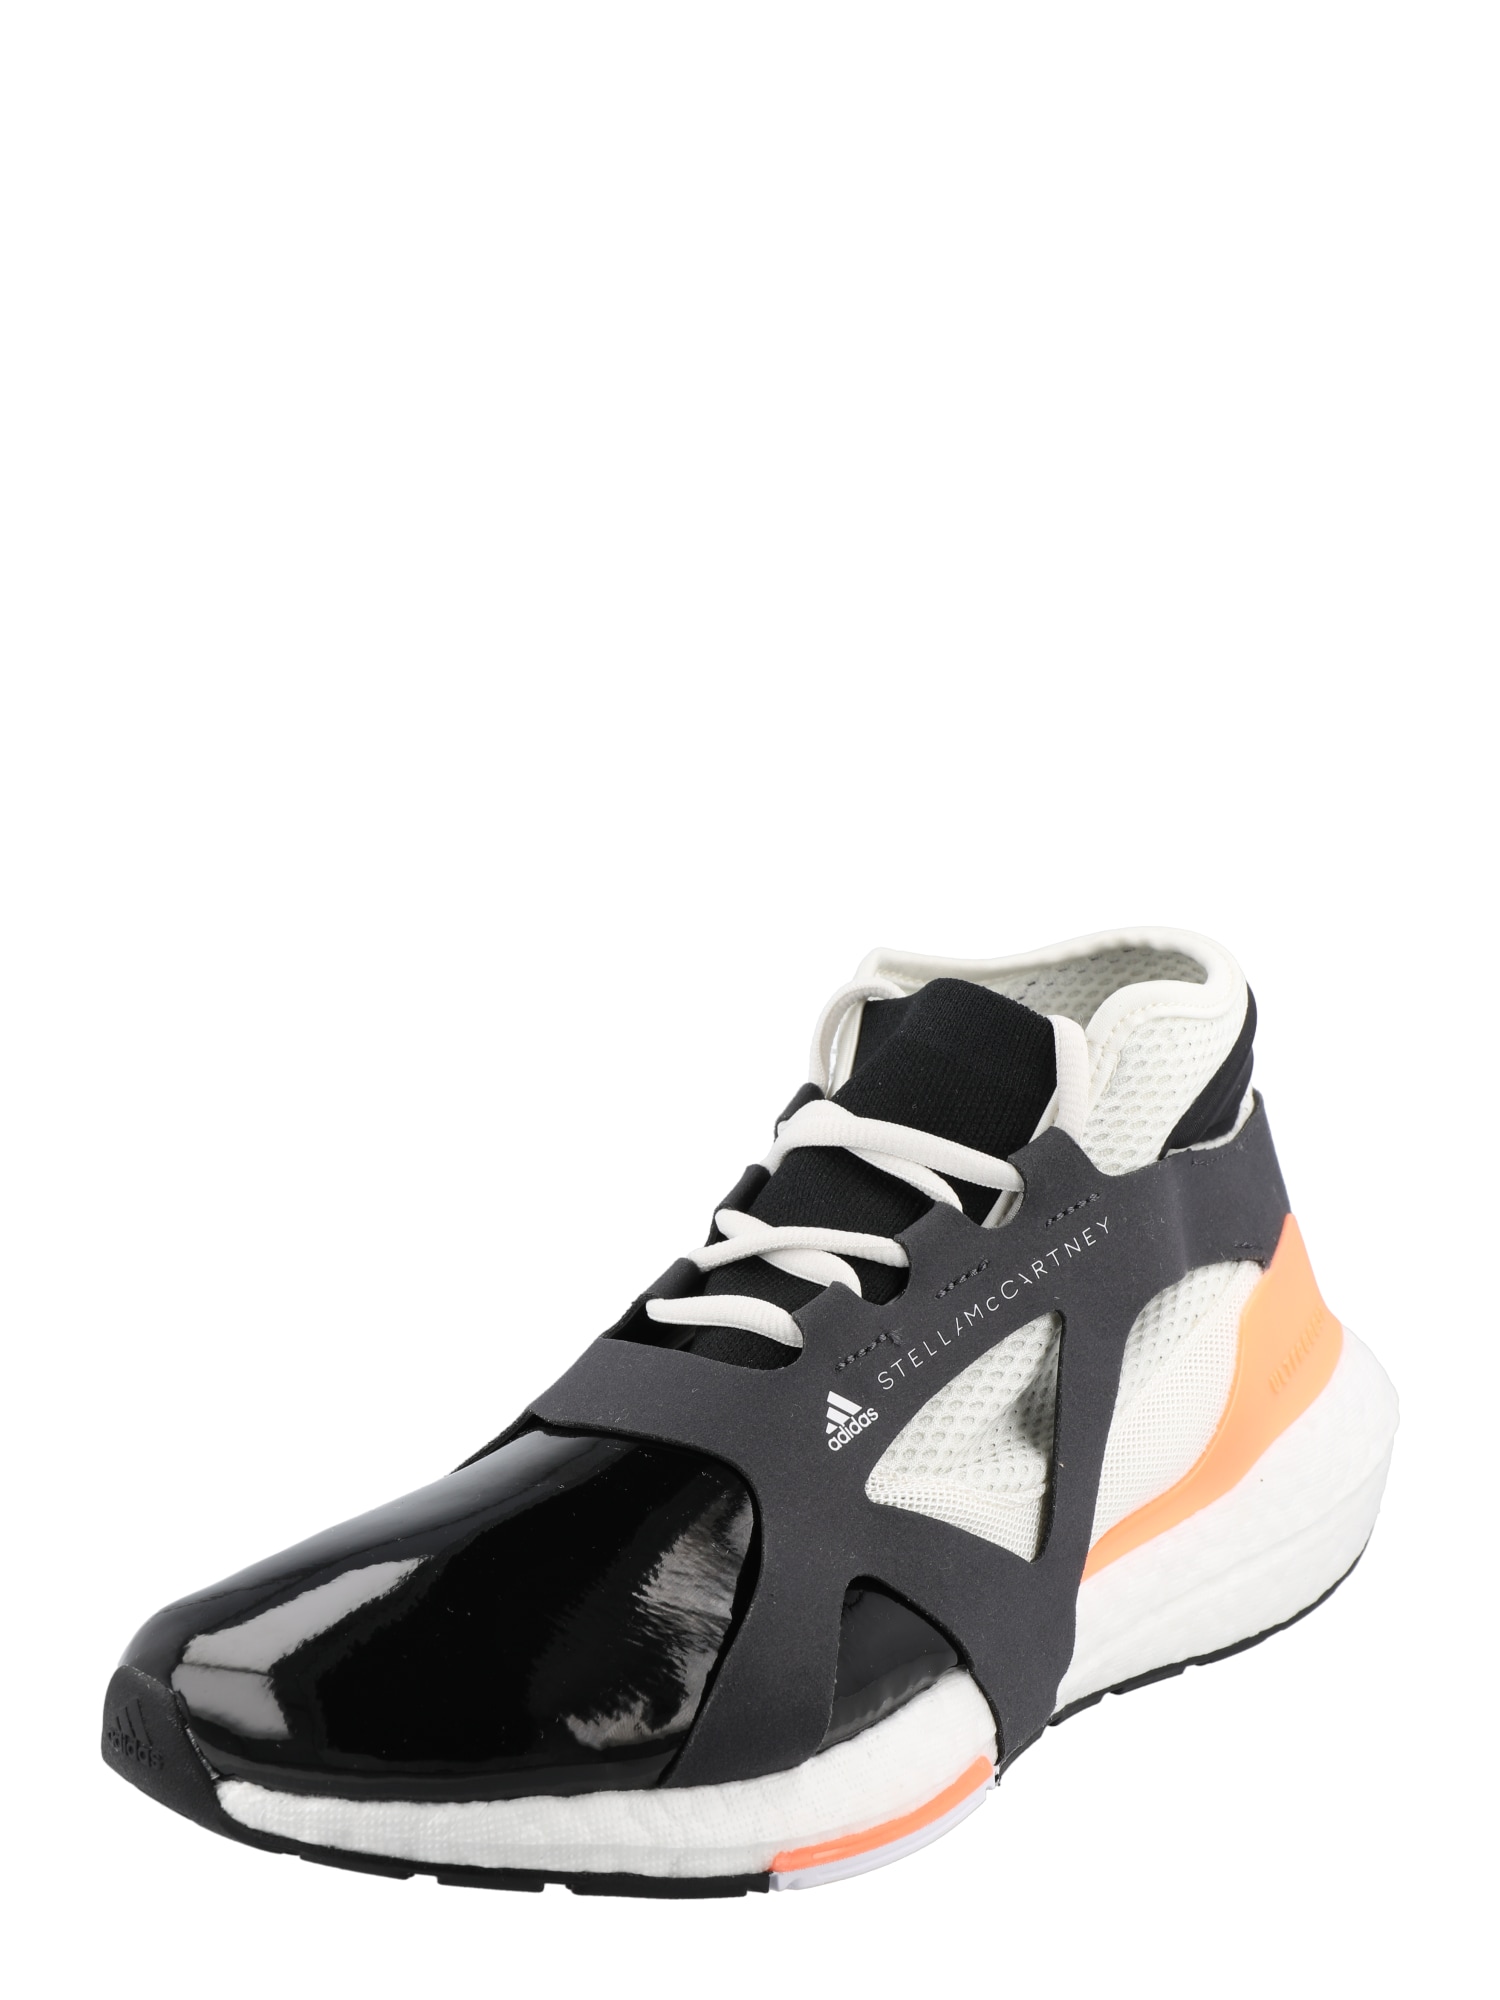 ADIDAS BY STELLA MCCARTNEY Bėgimo batai 'UltraBOOST 21' antracito spalva / abrikosų spalva / juoda / balta